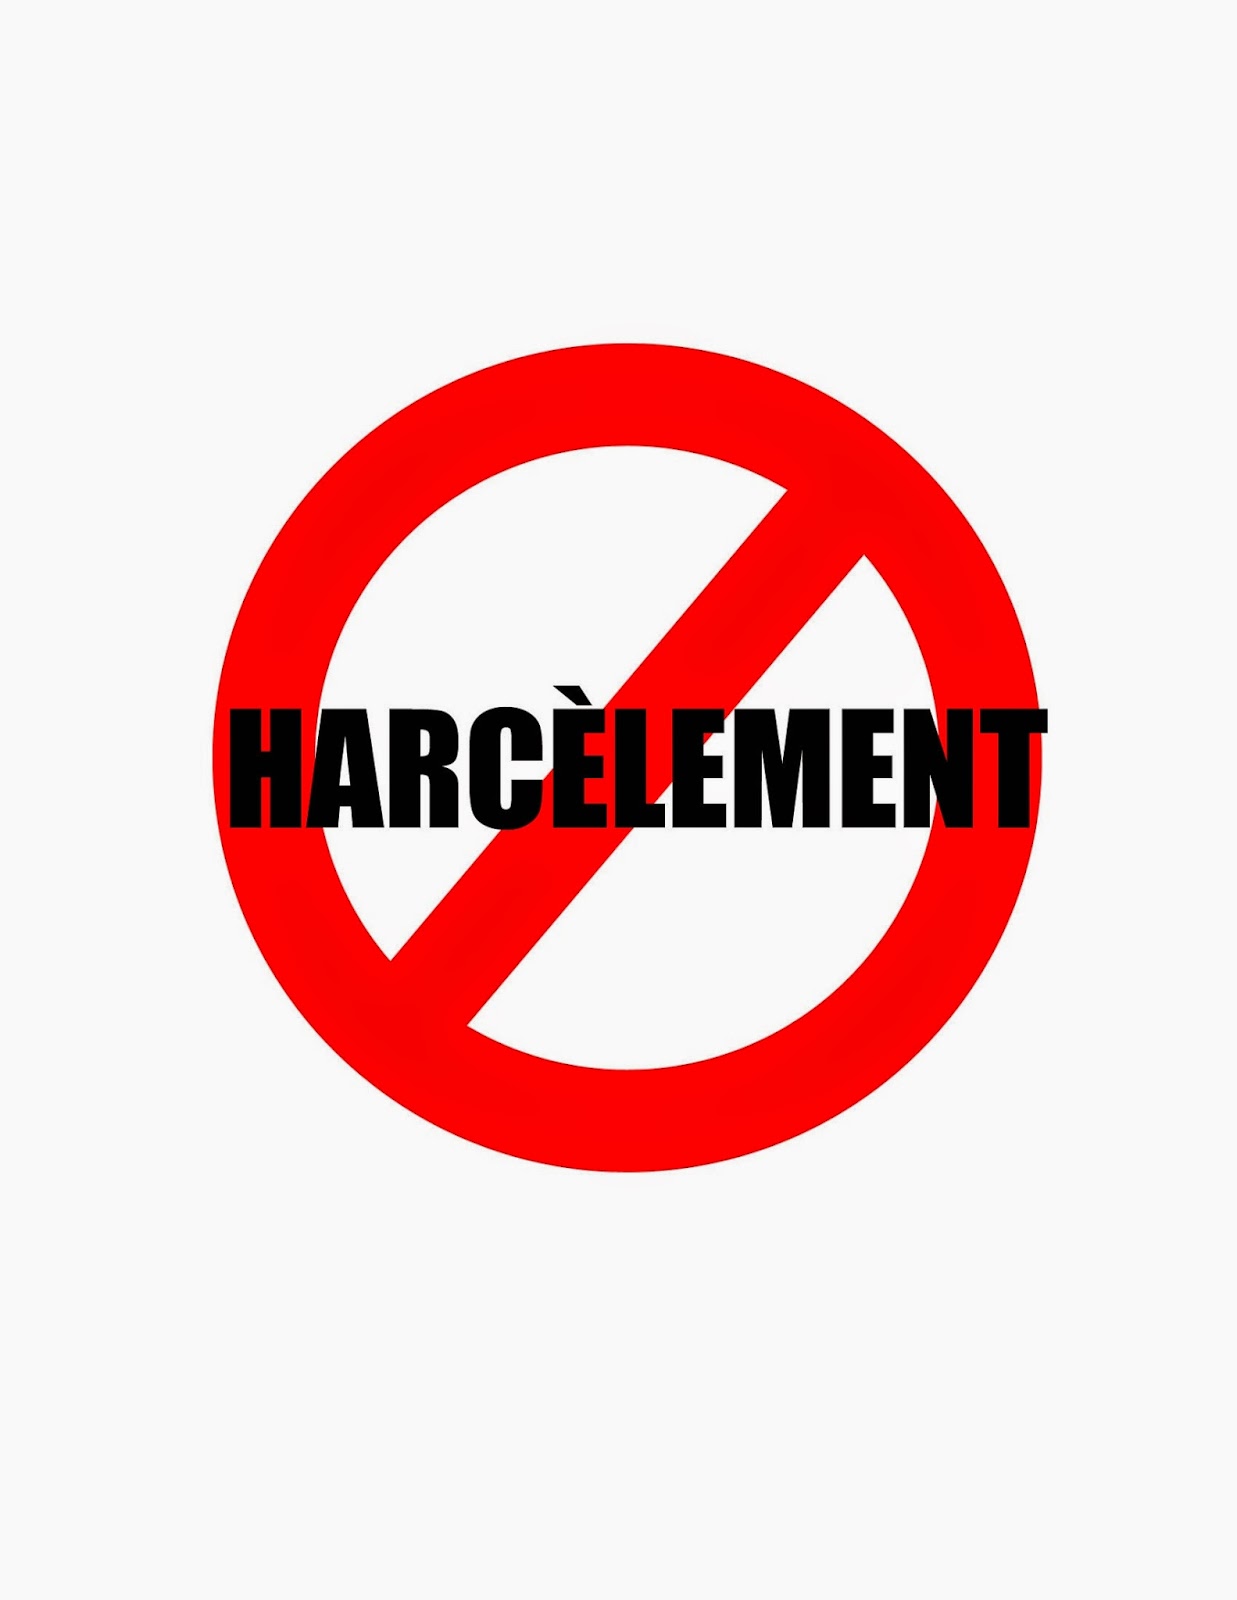 Lutte contre le harcèlement : Une agitation ministérielle hors sujet ...